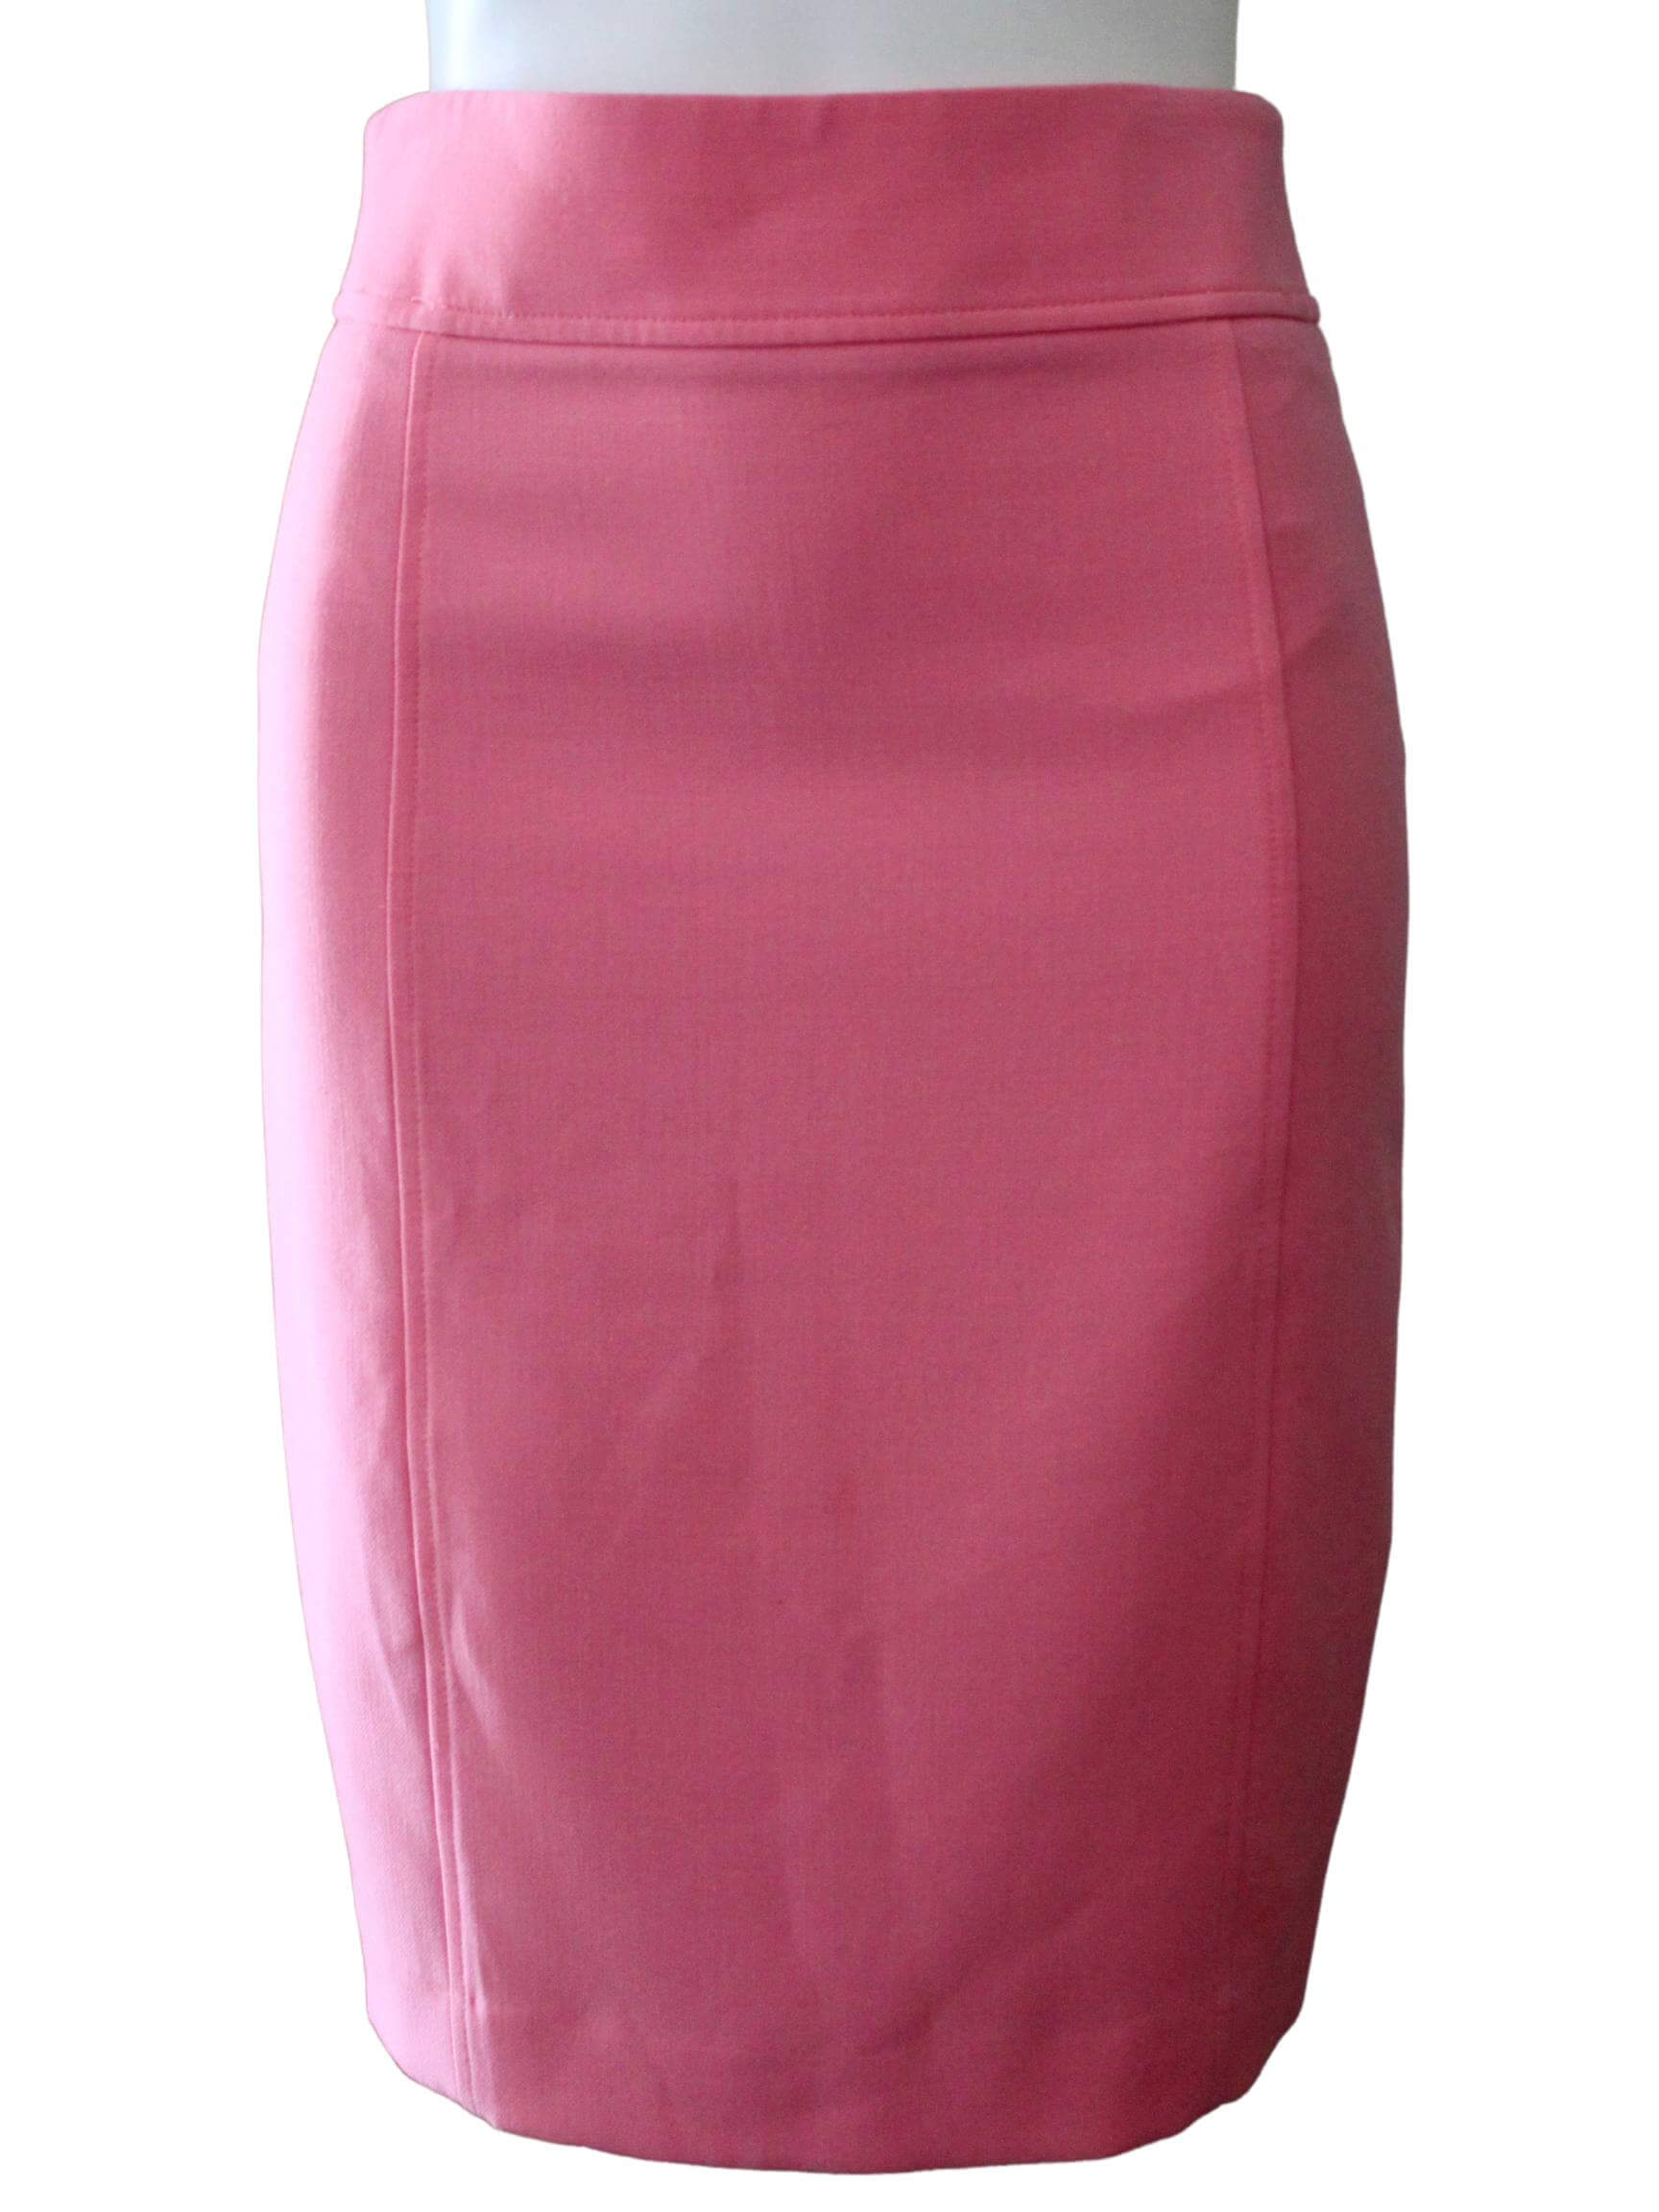 Light Summer ANN TAYLOR LOFT pink pencil skirt